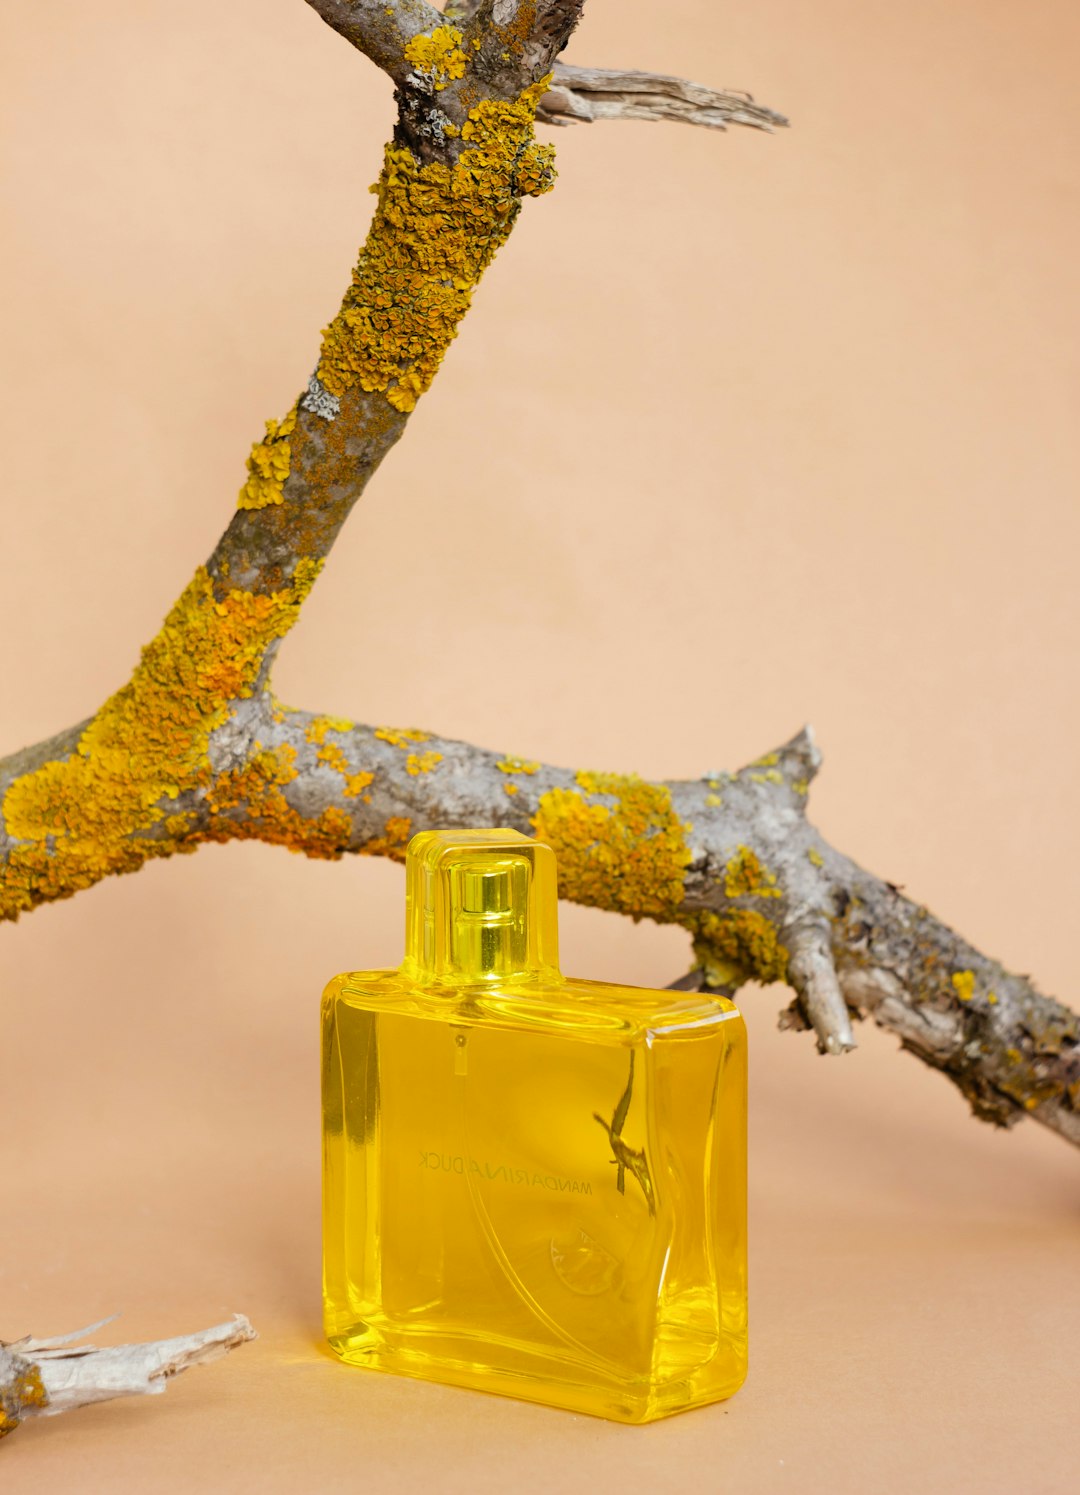 El Impacto del Packaging en la Industria de la Perfumería